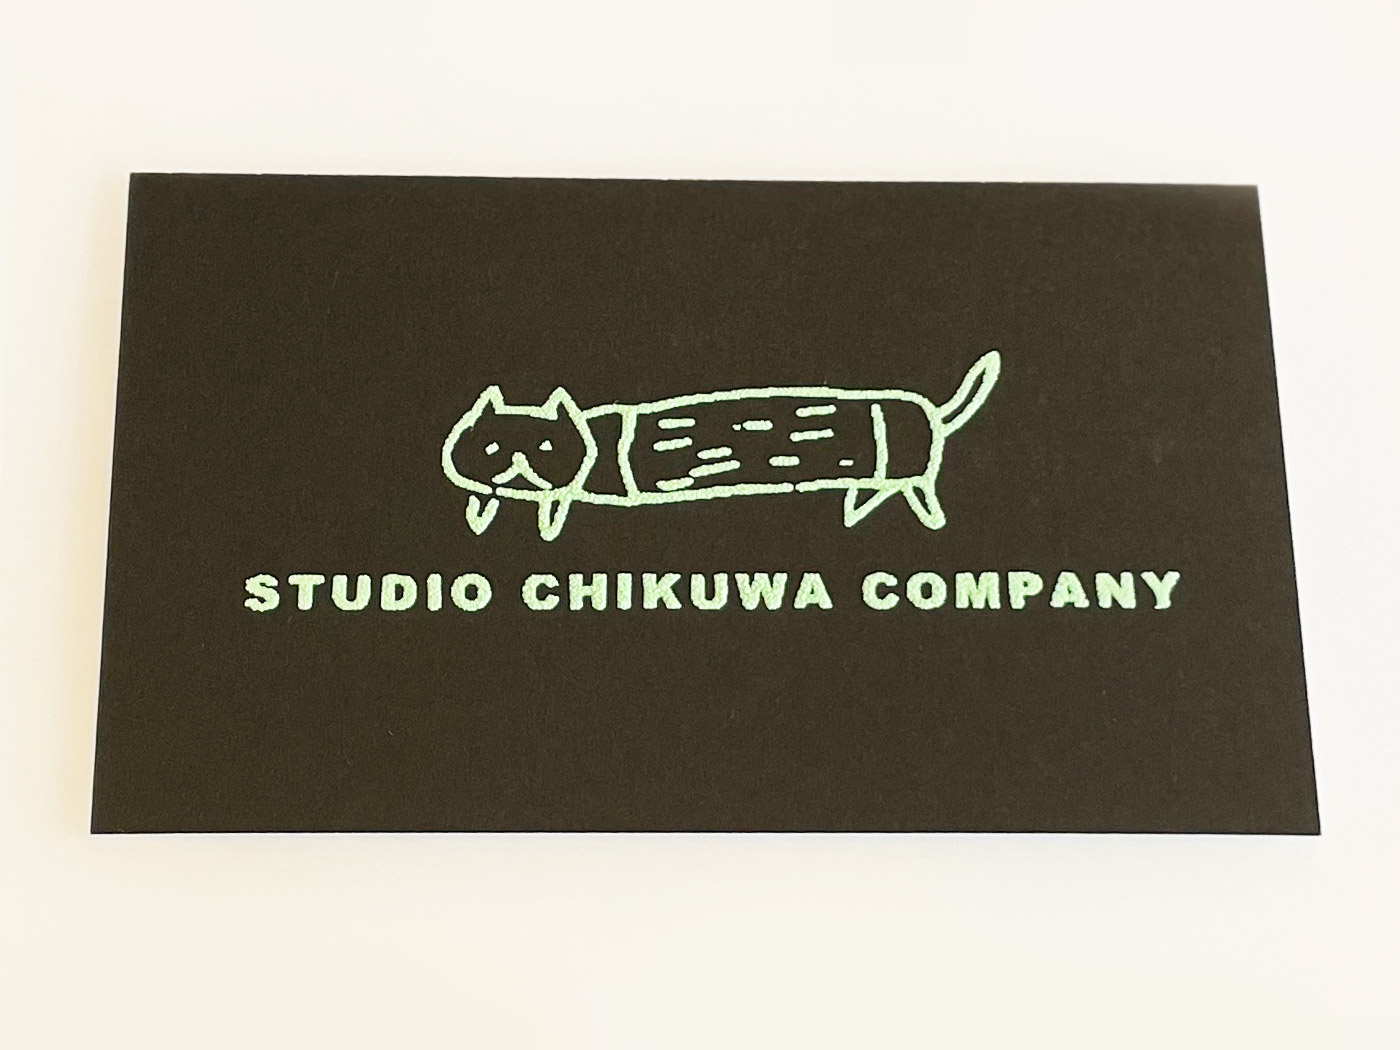 STUDIO CHIKUWA COMPANY